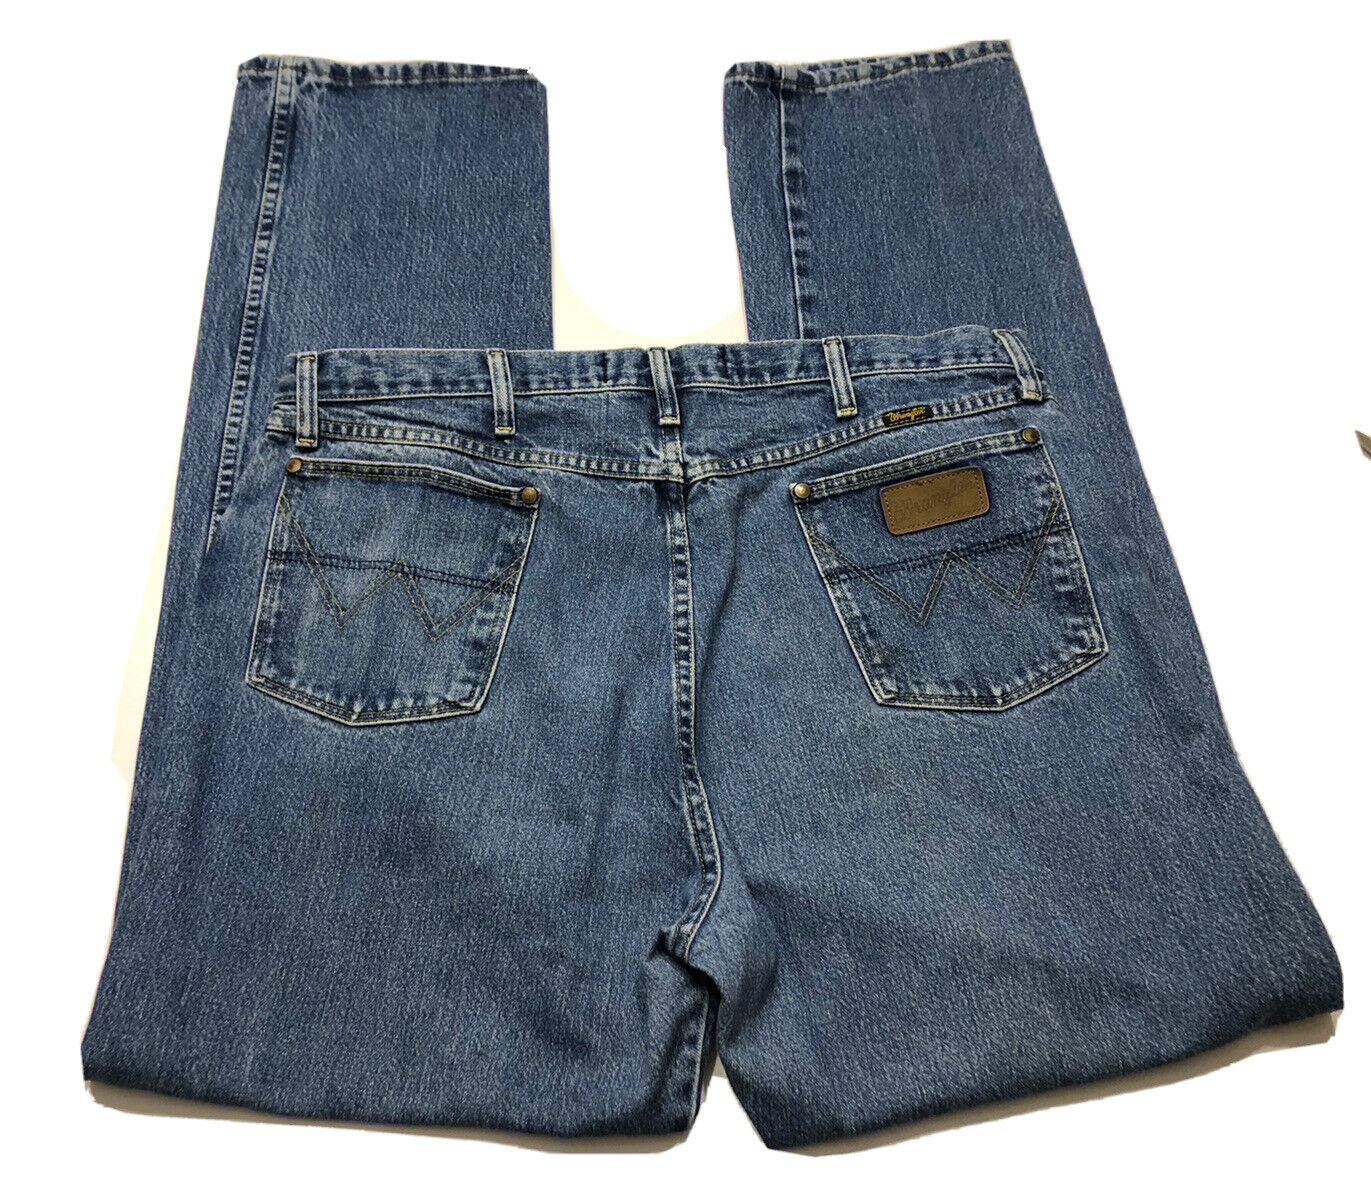 Wrangler George Strait Cowboy Cut Original Fit Jeans 40 X 34 13MGSHD | eBay